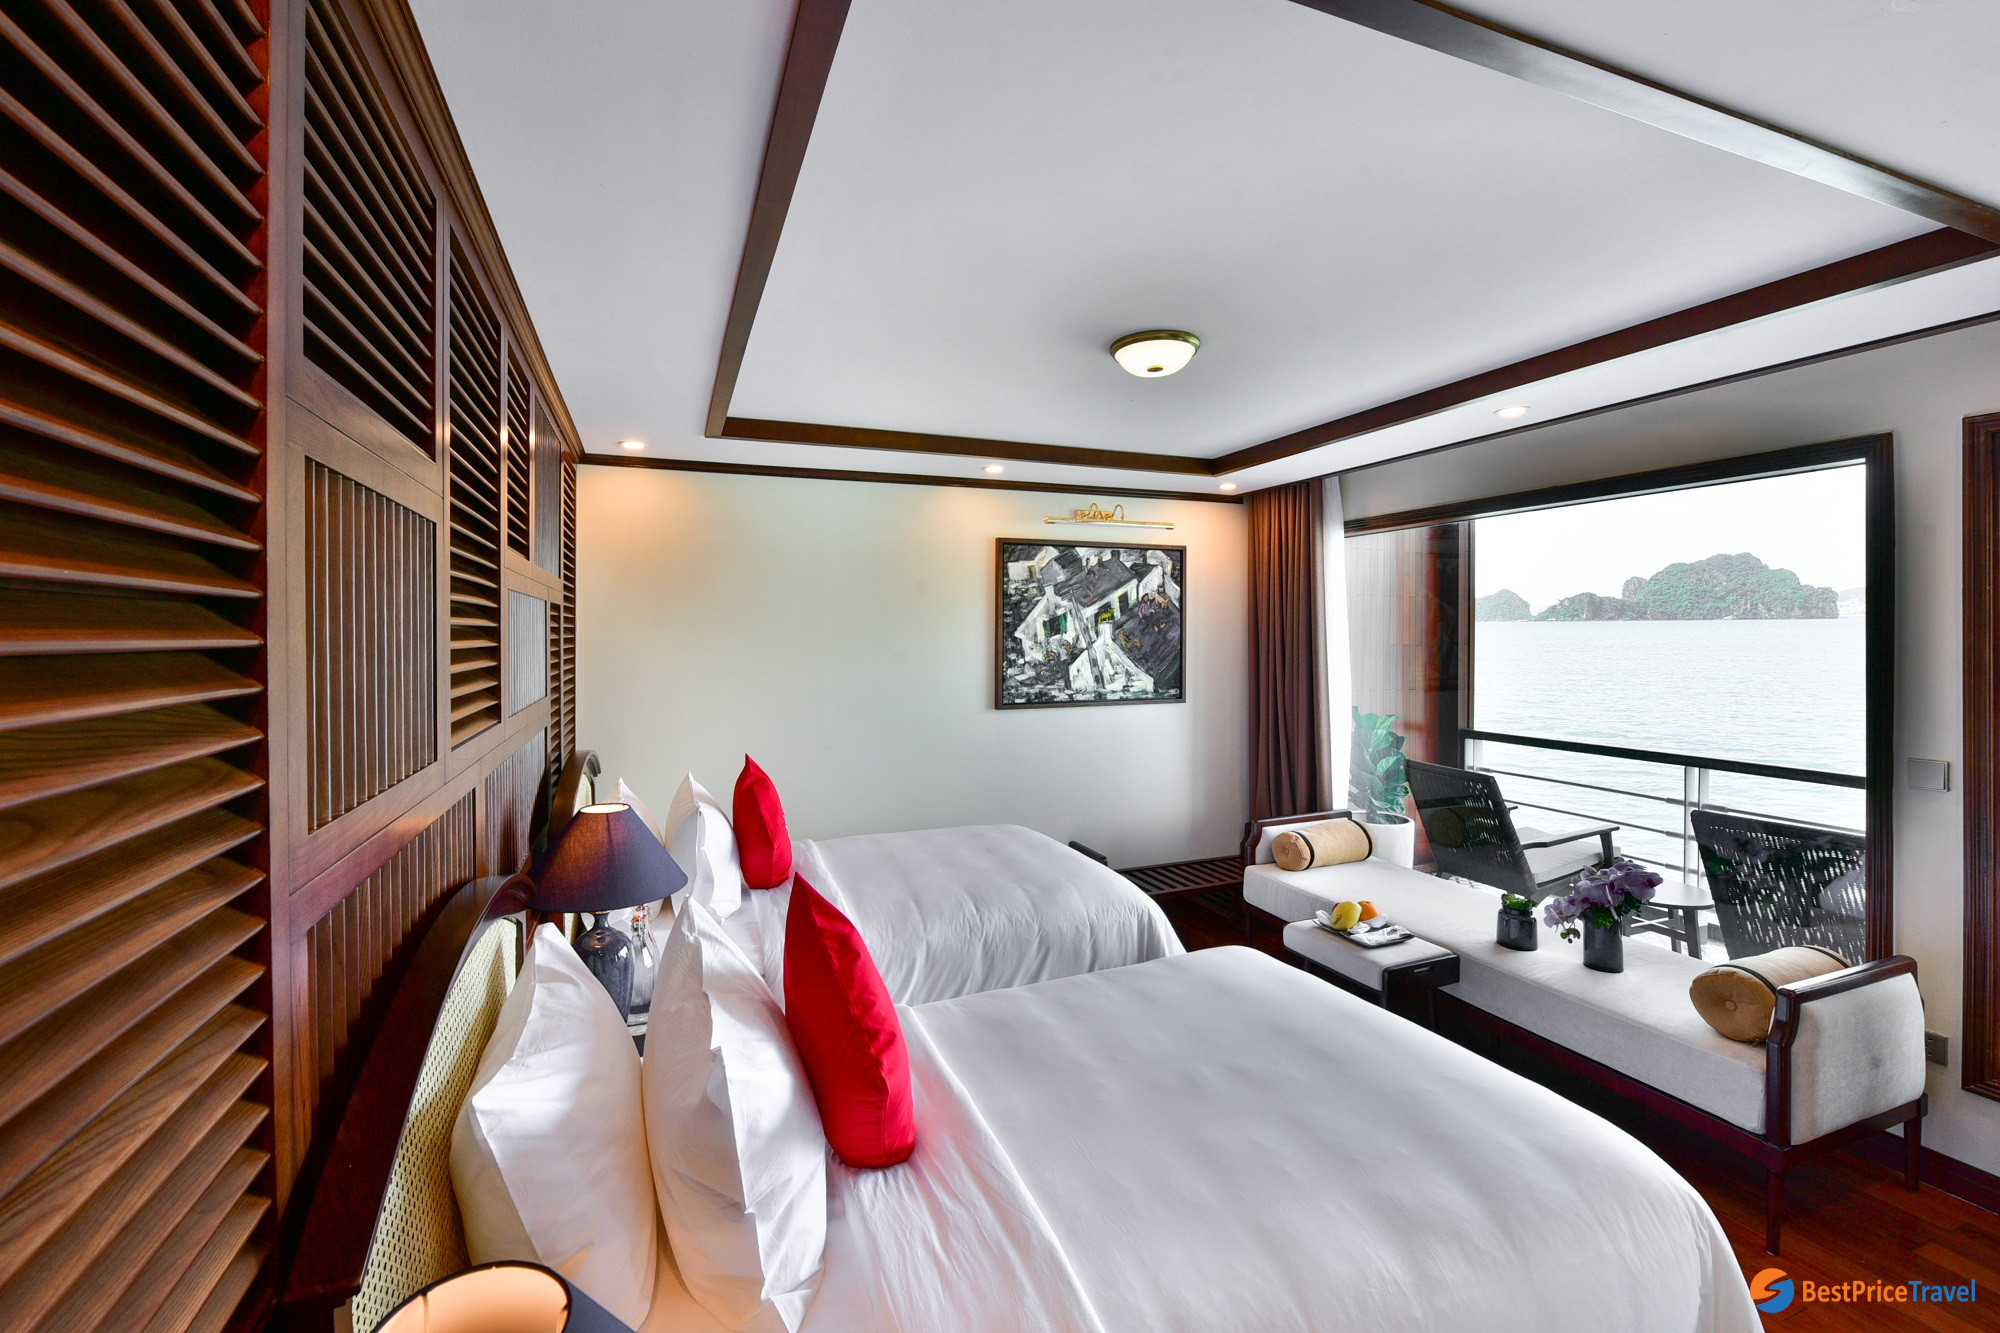 Heritage Cruise' Delta Suites